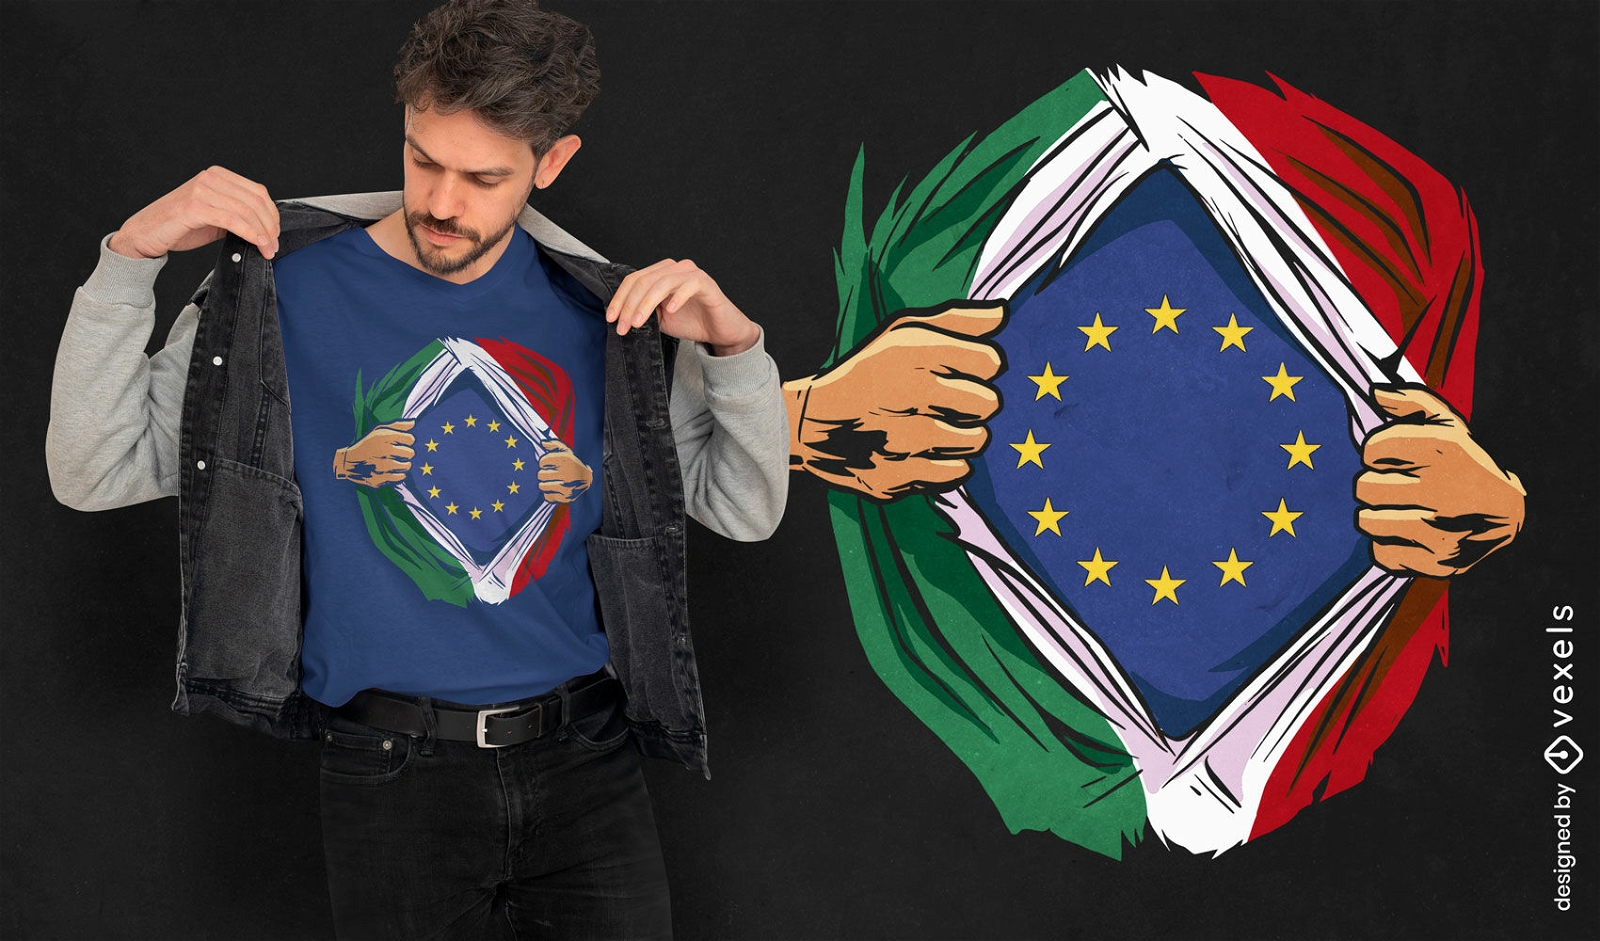 Diseño de camiseta con banderas italianas y europeas.